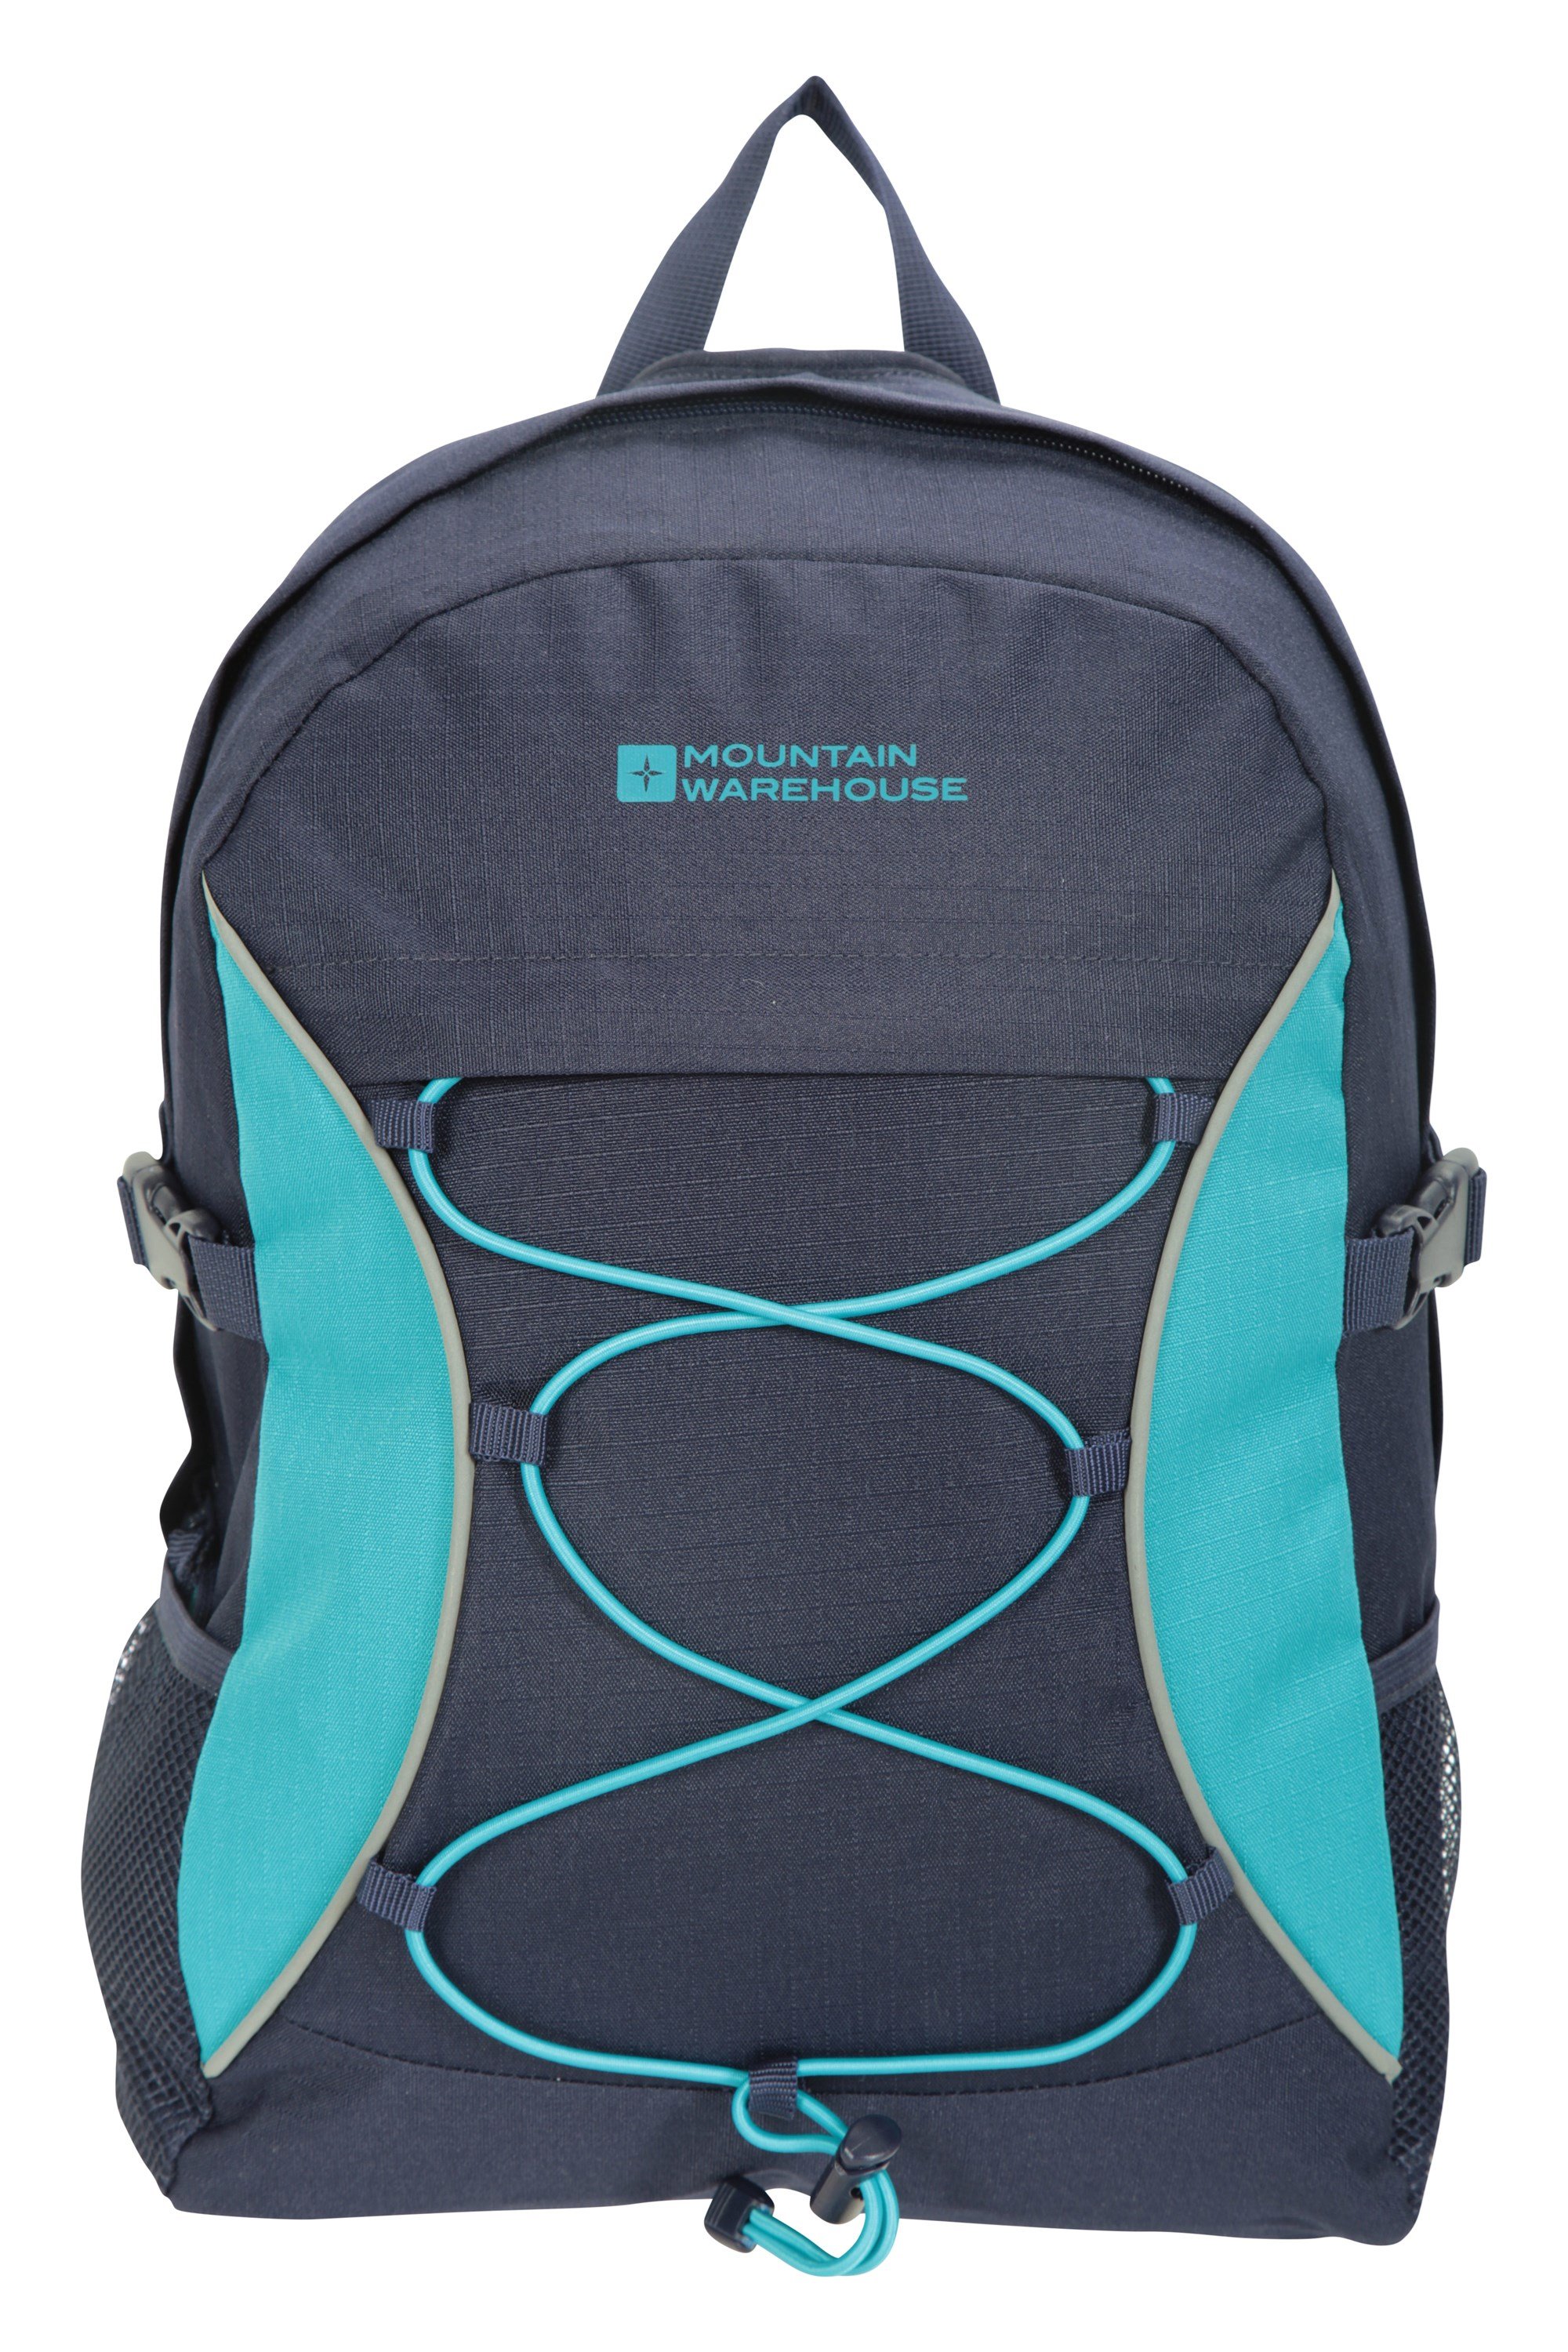 Mountain Warehouse Pursuit Hydro-Tasche Laptop-Fach Hydratationstasche mit reflektierenden Details Camping für Reisen Ripstop-Polyester-Wasserhalter